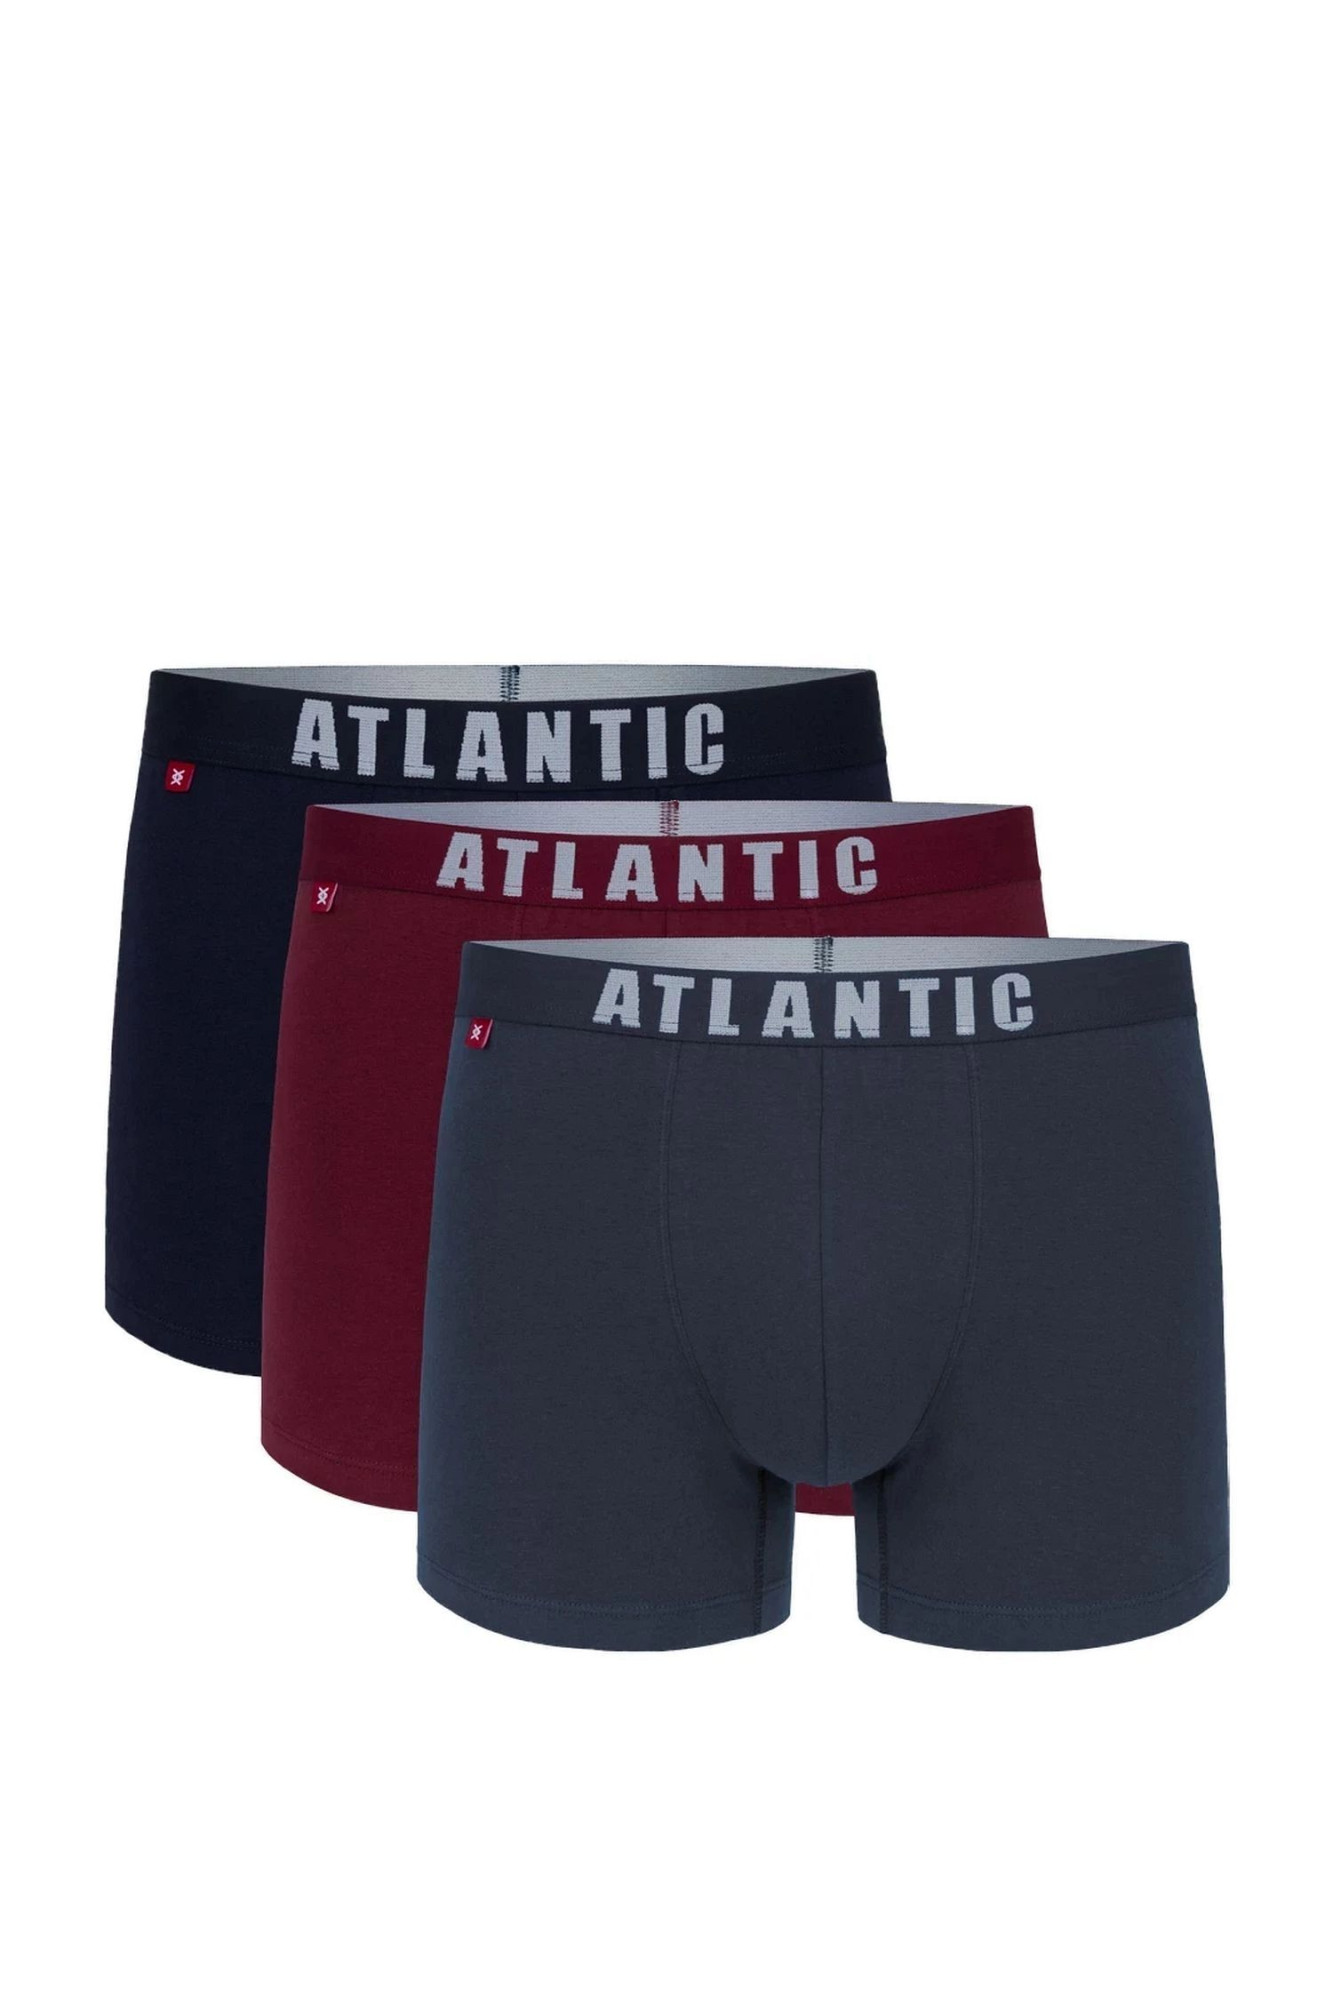 Pánské boxerky 3 pack 011/01 - Atlantic vícebarevná S